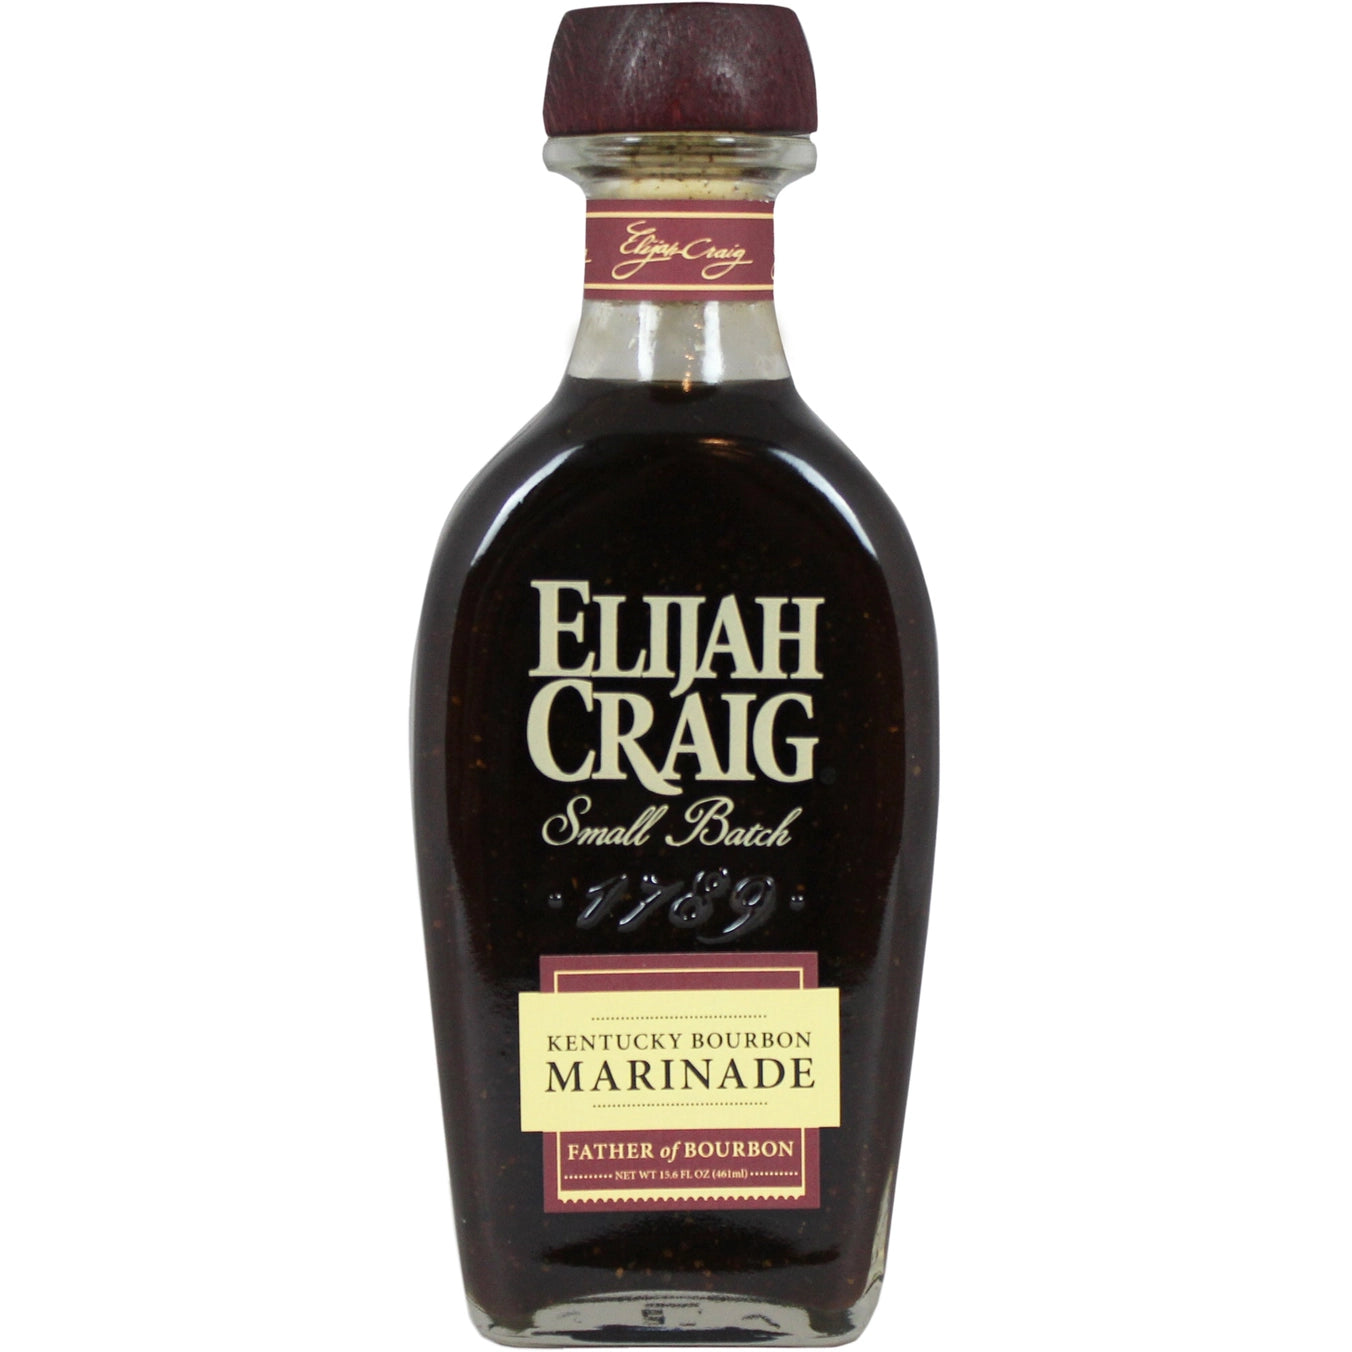 Elijah Craig Kentucky Bourbon Marinade